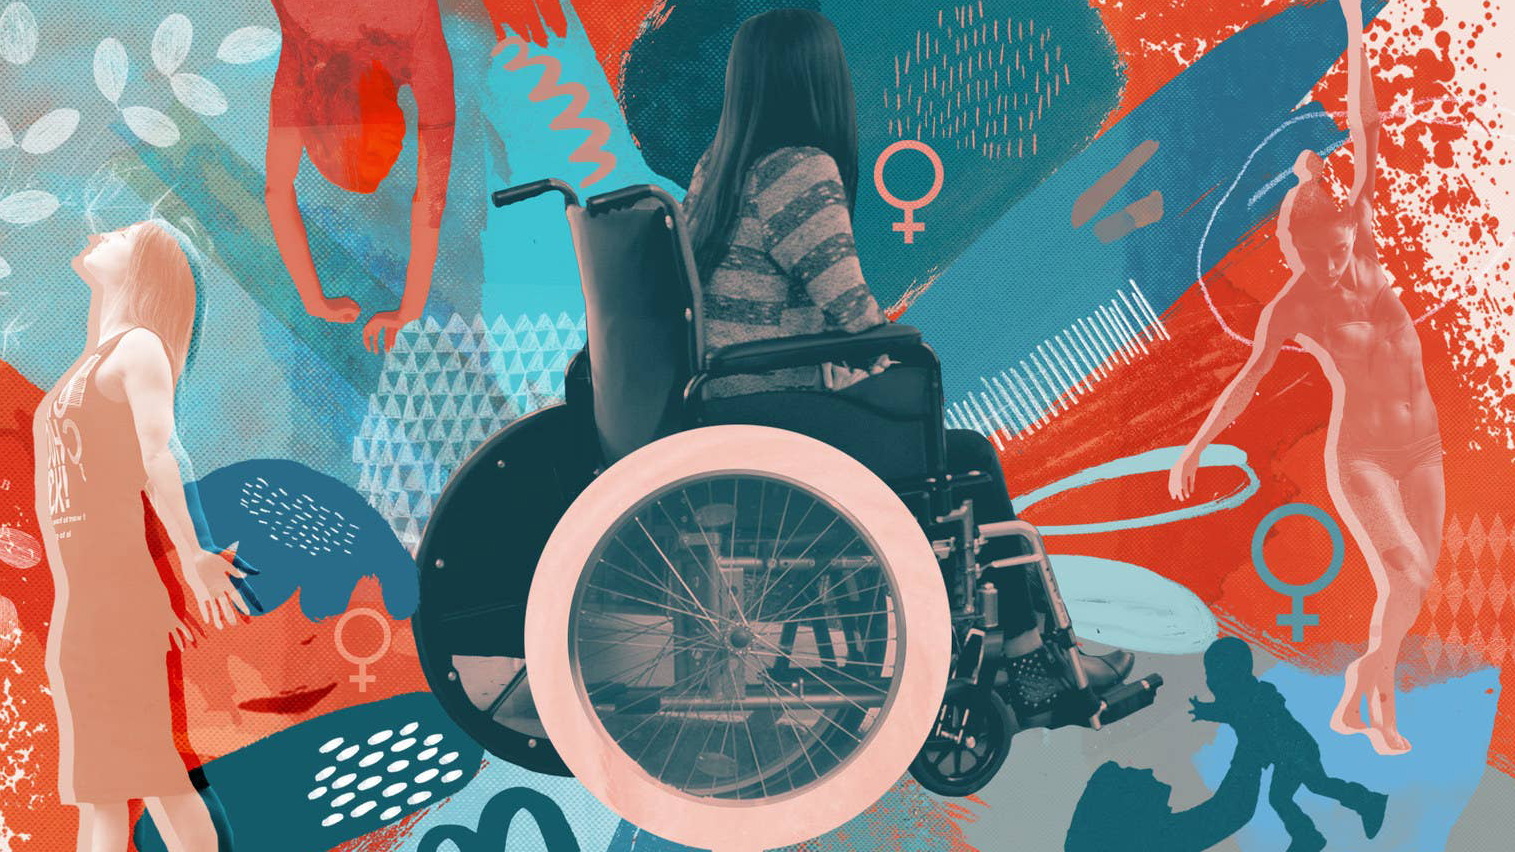 Composición gráfica con una mejer en silla de ruedas en primer plano y dibujos artísticos rodeando la figura